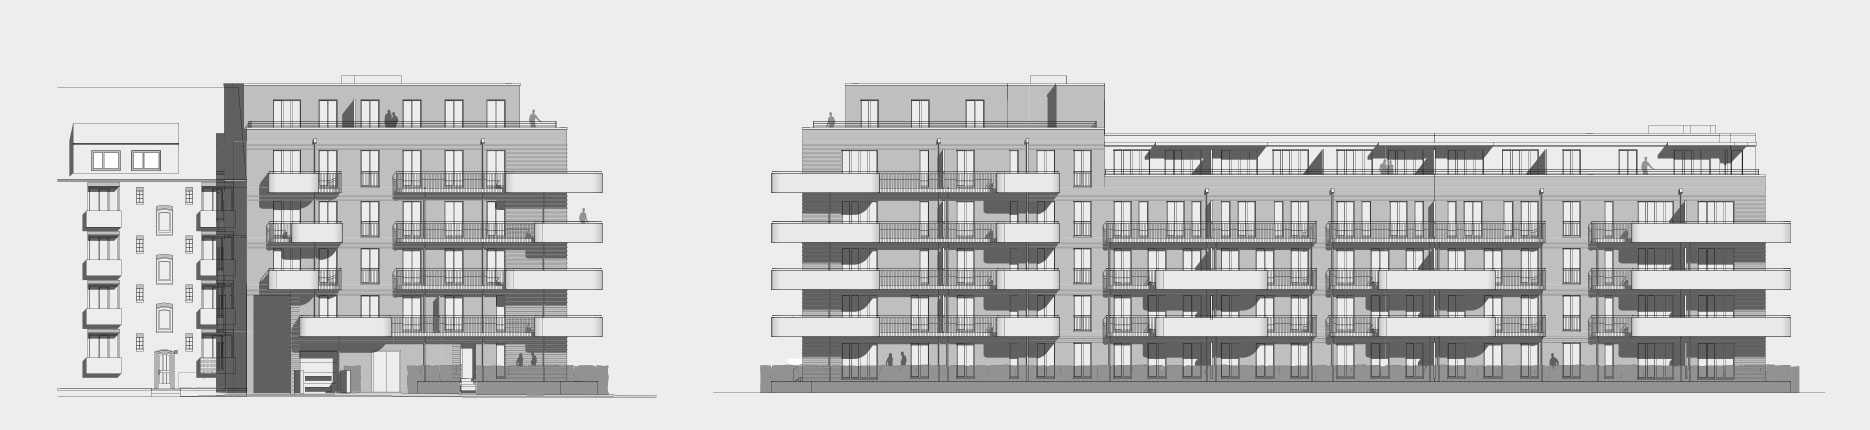 Architekturzeichnung - Diese Zeichnung zeigt ein Bauprojekt für Kapitalanleger in Hamburg Barmbek.